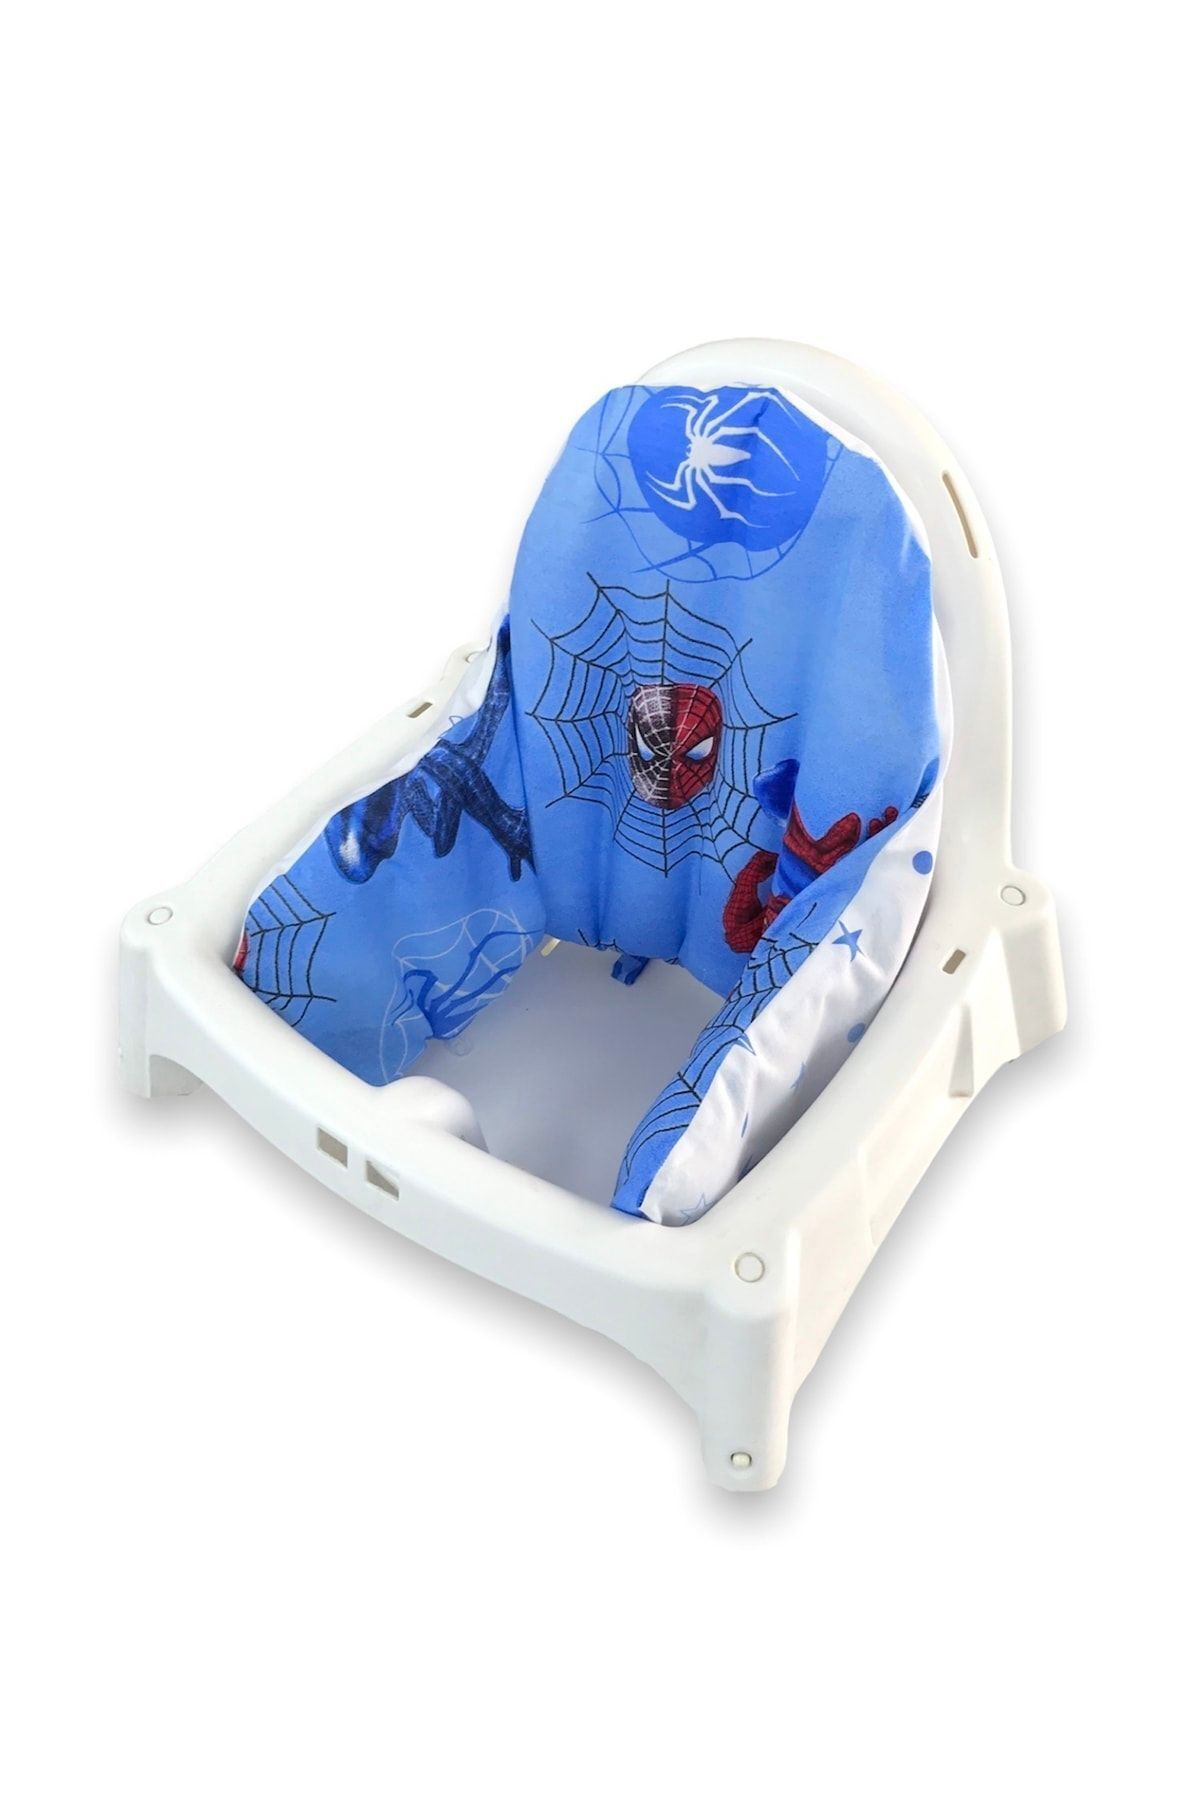 Bebek Özel Antılop Mama Sandalyesi Için Destek Minderi Kılıf + Iç Minder Örümcek Adam